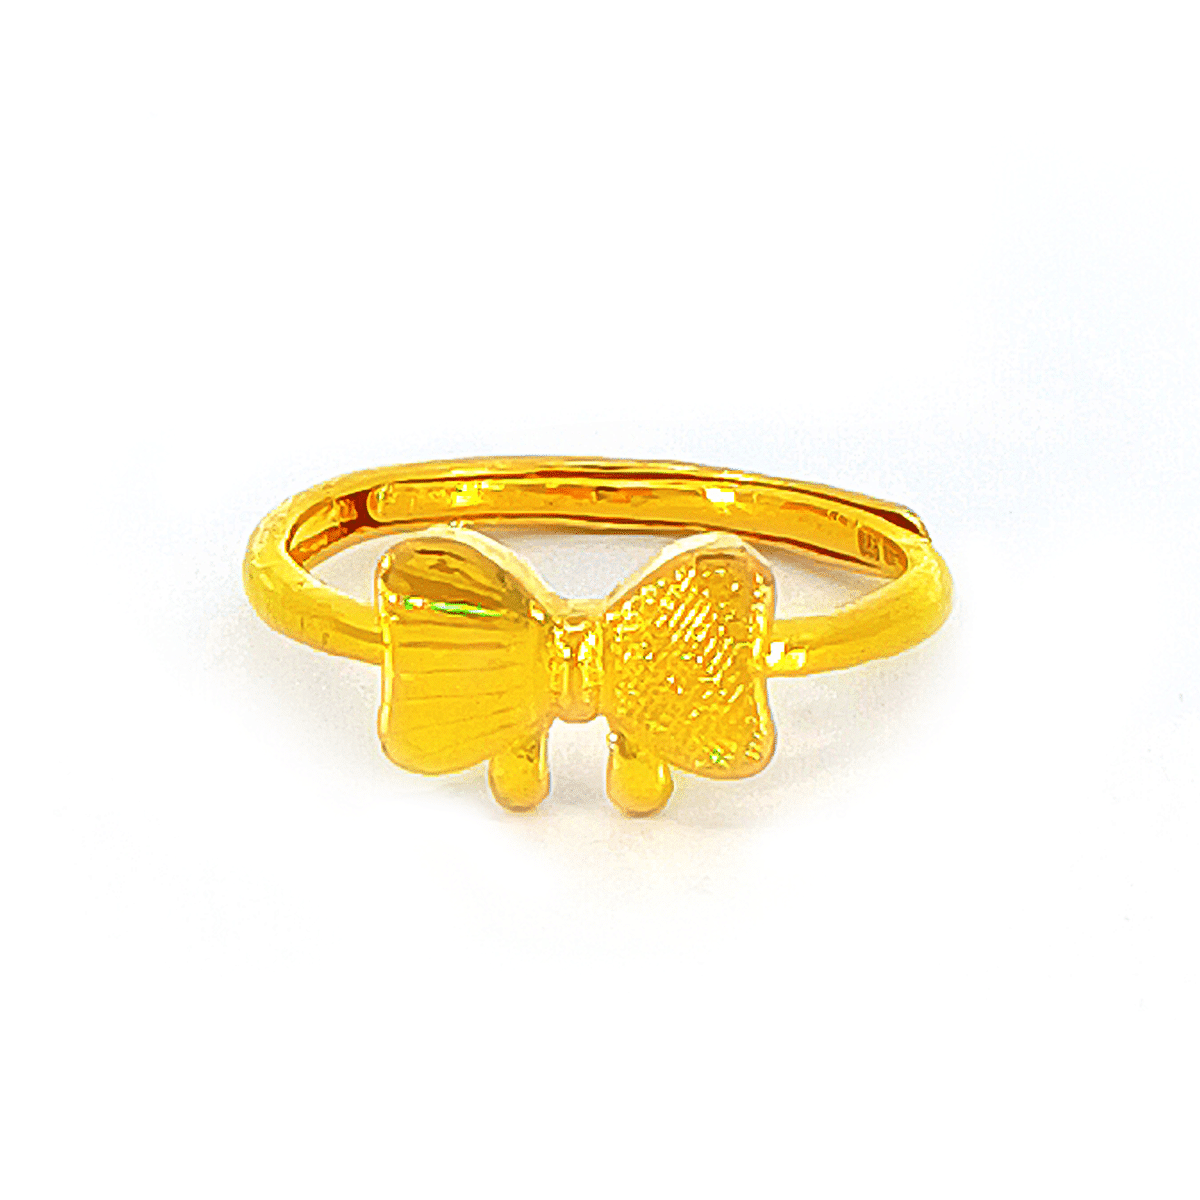 SK CINCIN EMAS TULEN 999 RIBBON-TIED cincin comel dibuat dengan emas tulen 999 dengan busur berbeza tekstur